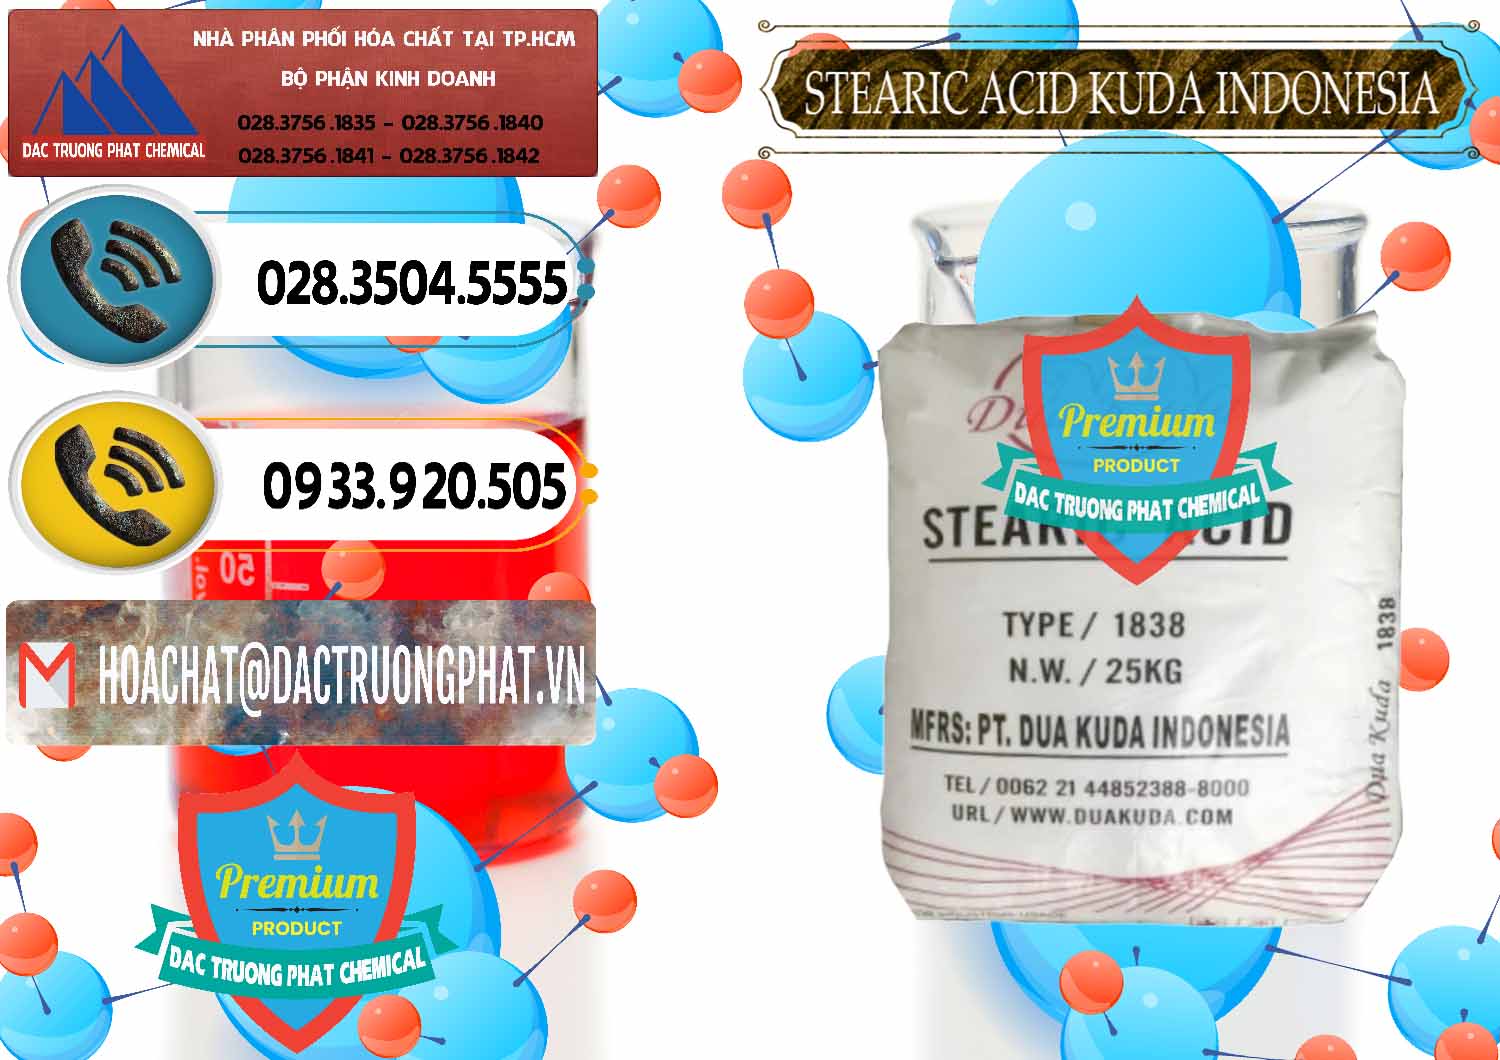 Cty phân phối ( bán ) Axit Stearic - Stearic Acid Dua Kuda Indonesia - 0388 - Nơi cung ứng _ phân phối hóa chất tại TP.HCM - hoachatdetnhuom.vn